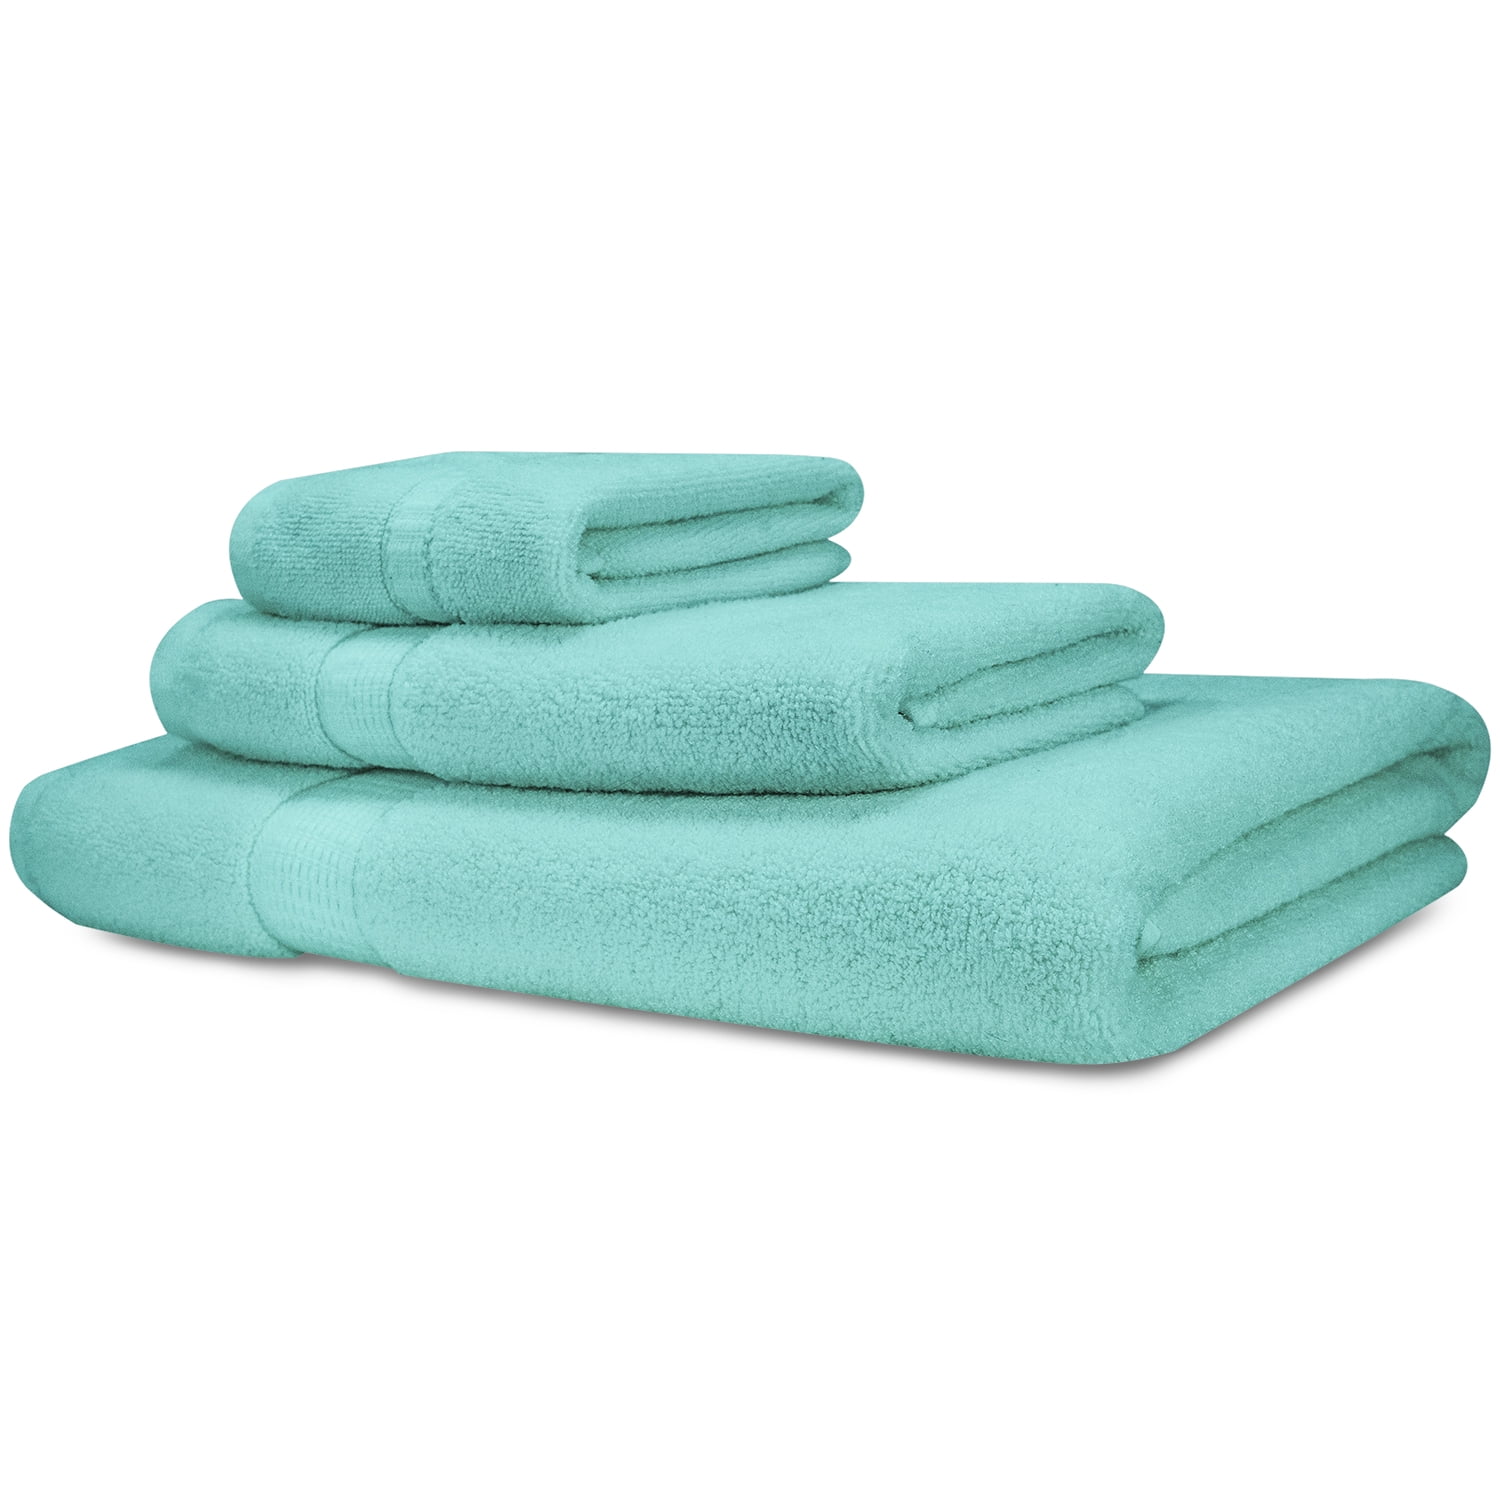 3pcs Soft Cotton Towel Set Luxury Look Face Hand Towel Gym Bath Towels Bathroom